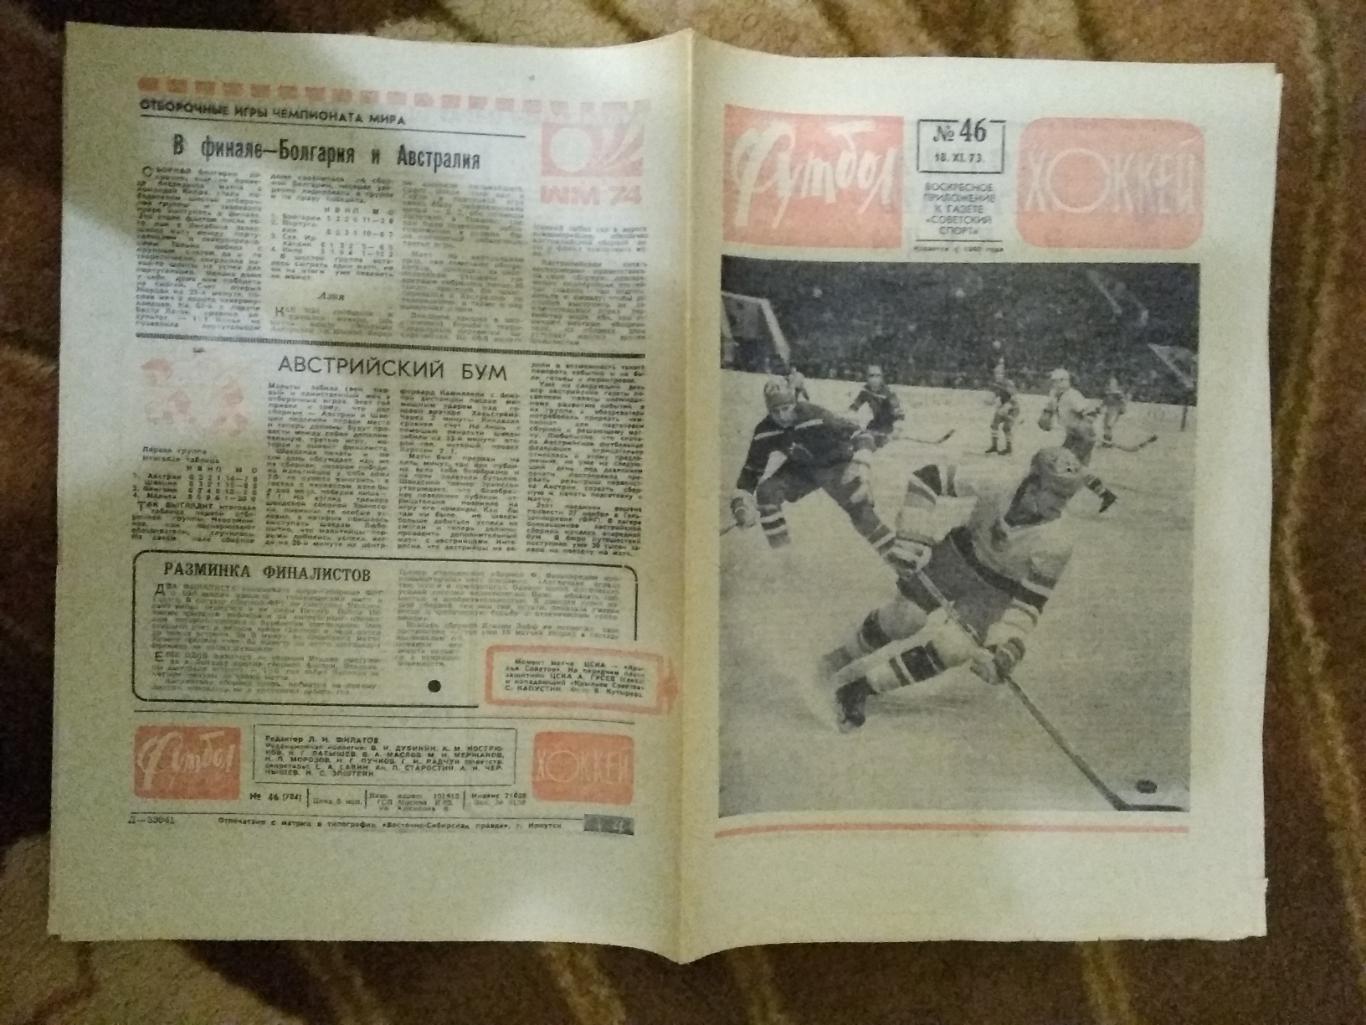 Футбол-Хоккей № 46 1973 г.